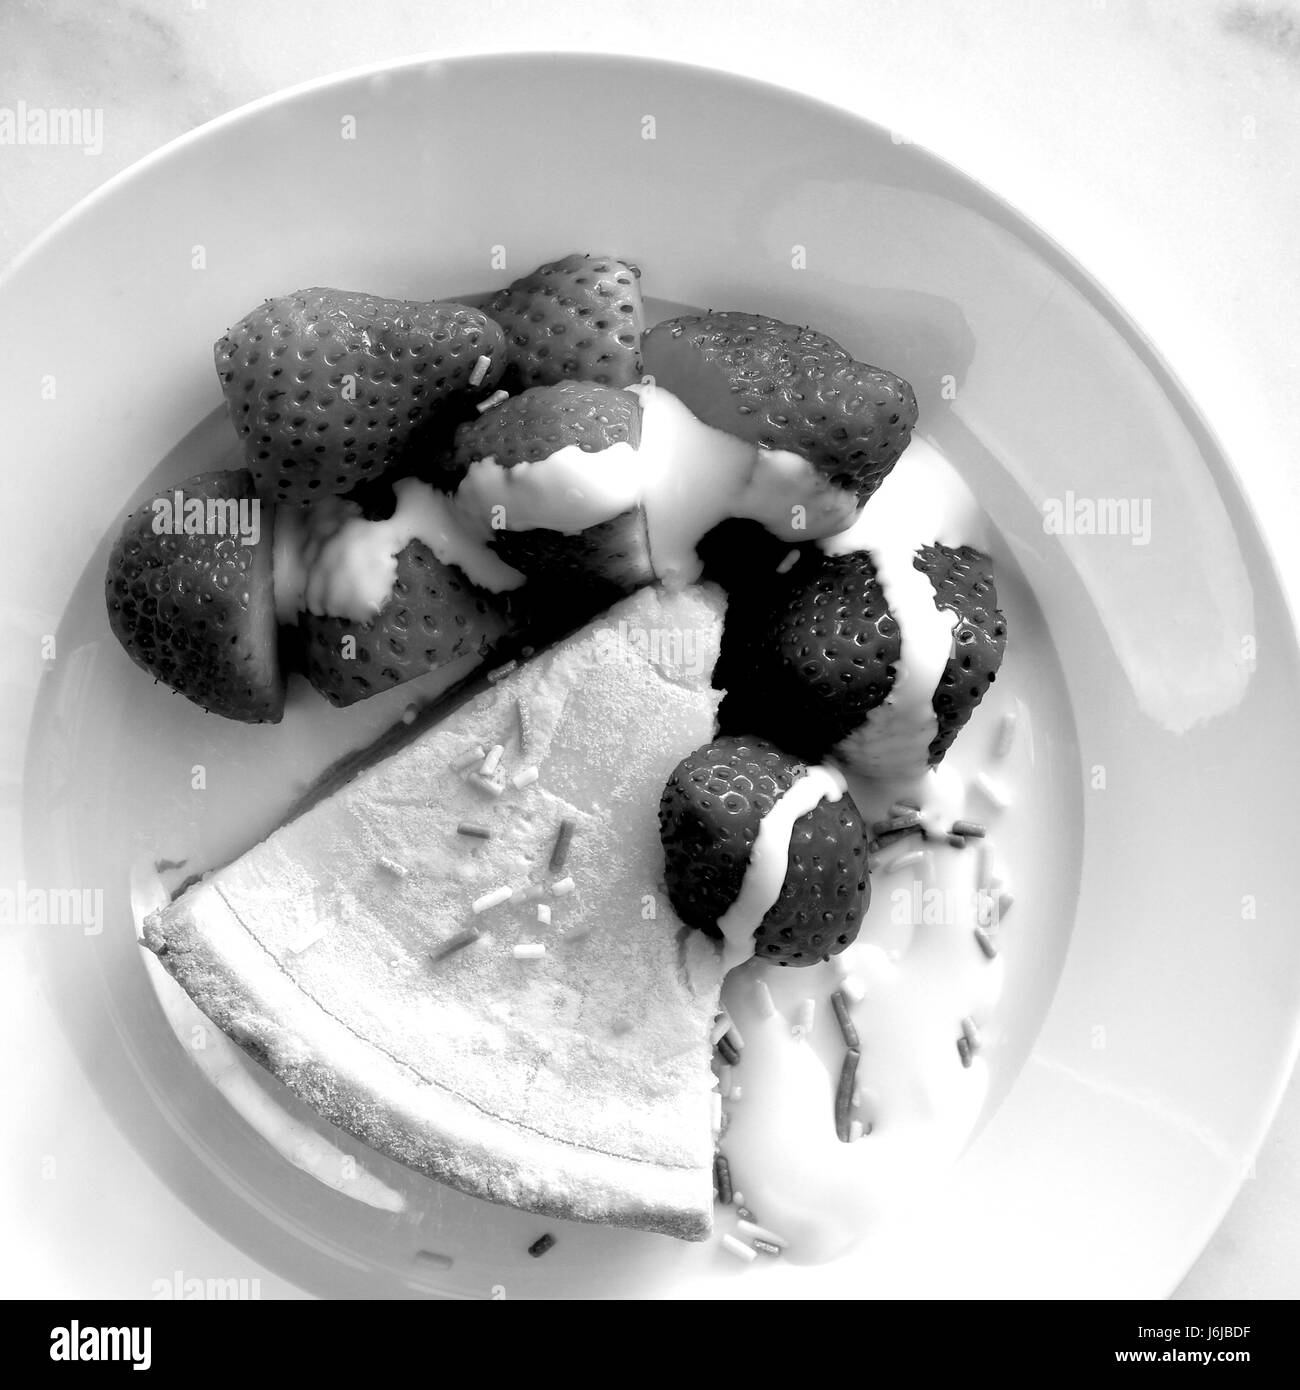 Cheesecake strawberries and cream (black and white) Stock Photo